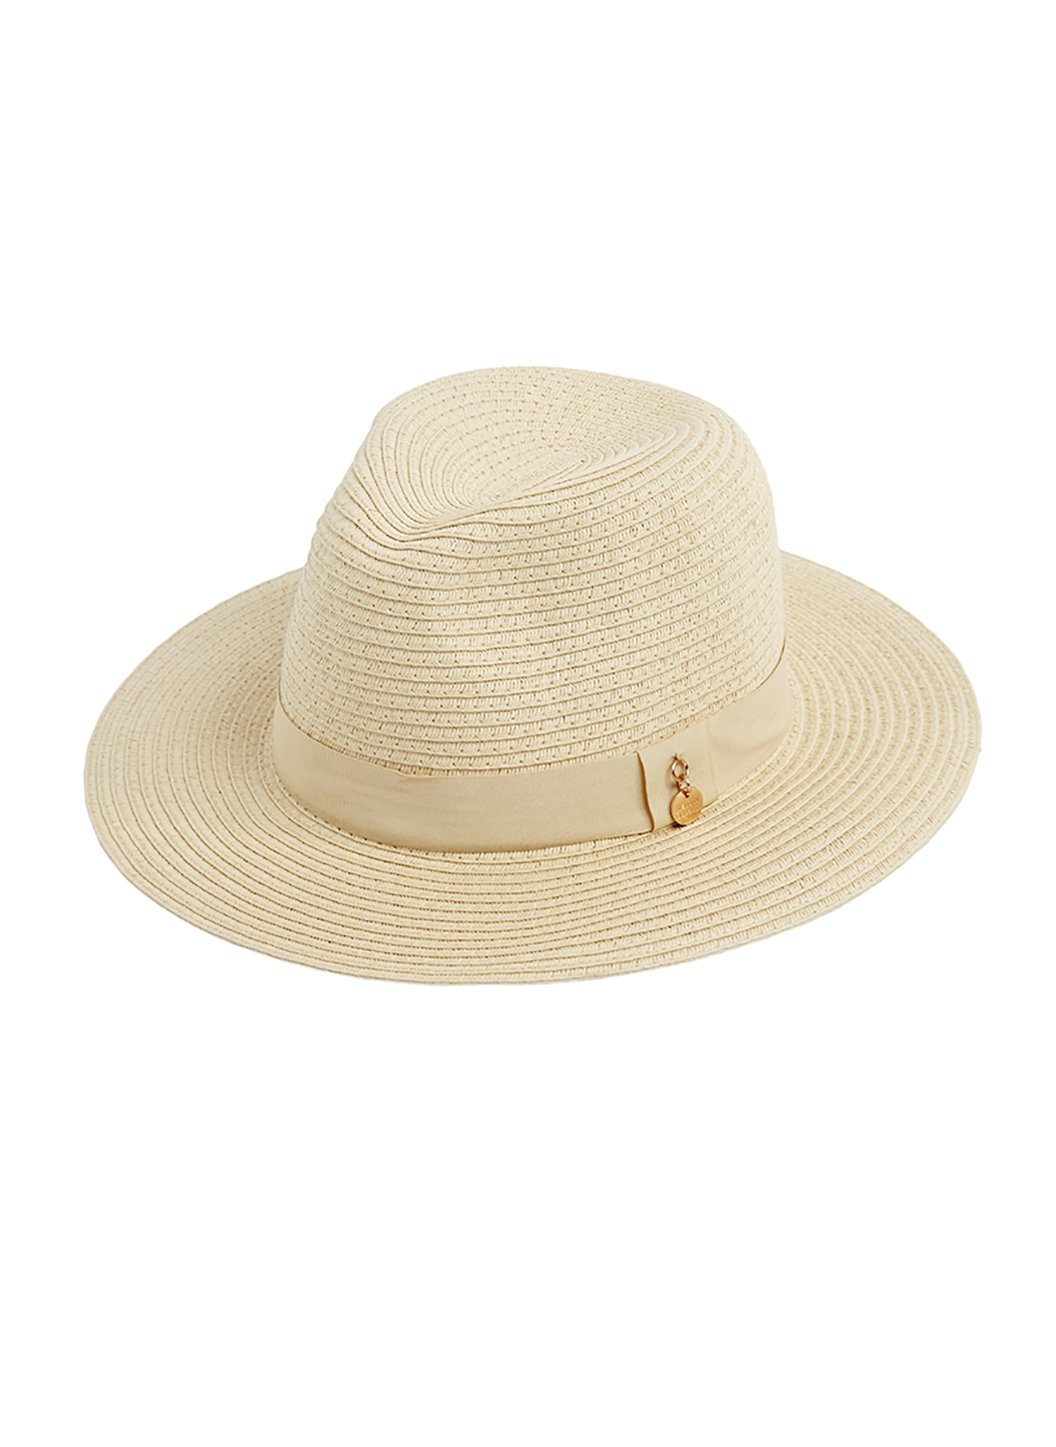 Melissa Odabash Jemima Wide Brimmed Beach Hat in Beige | Official Website